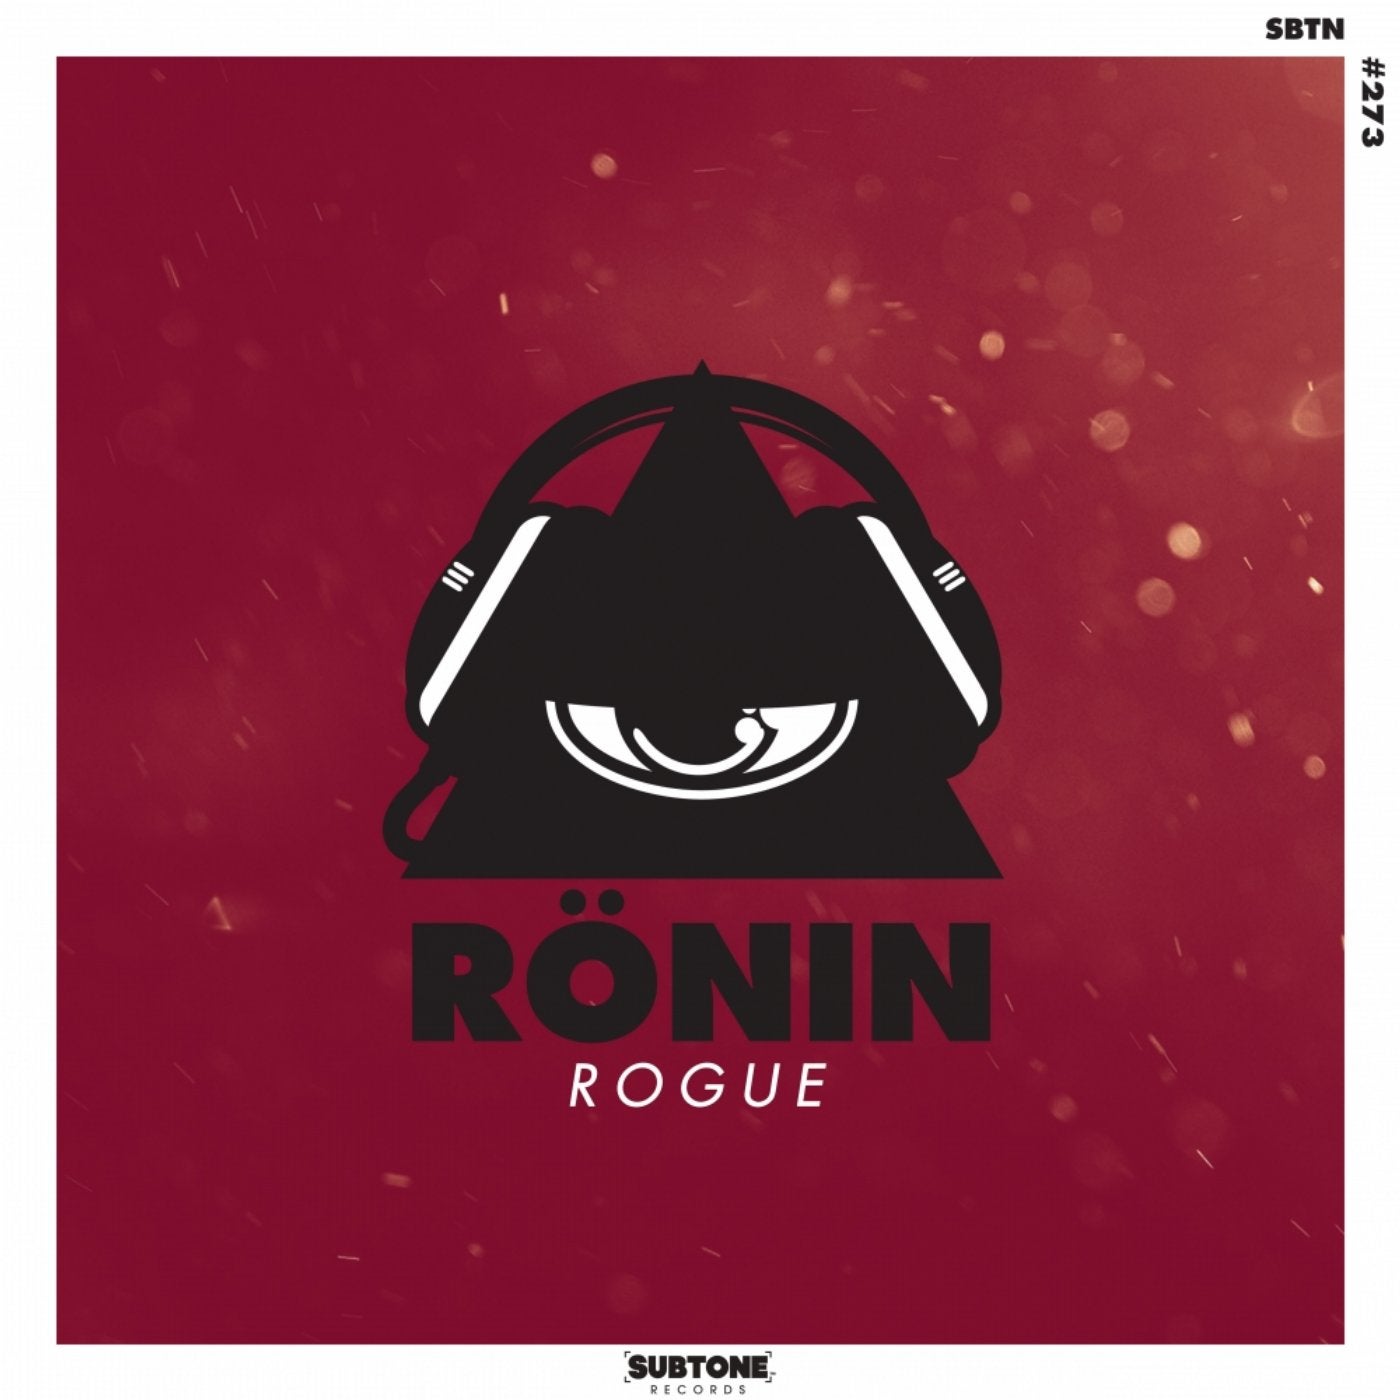 Rogue